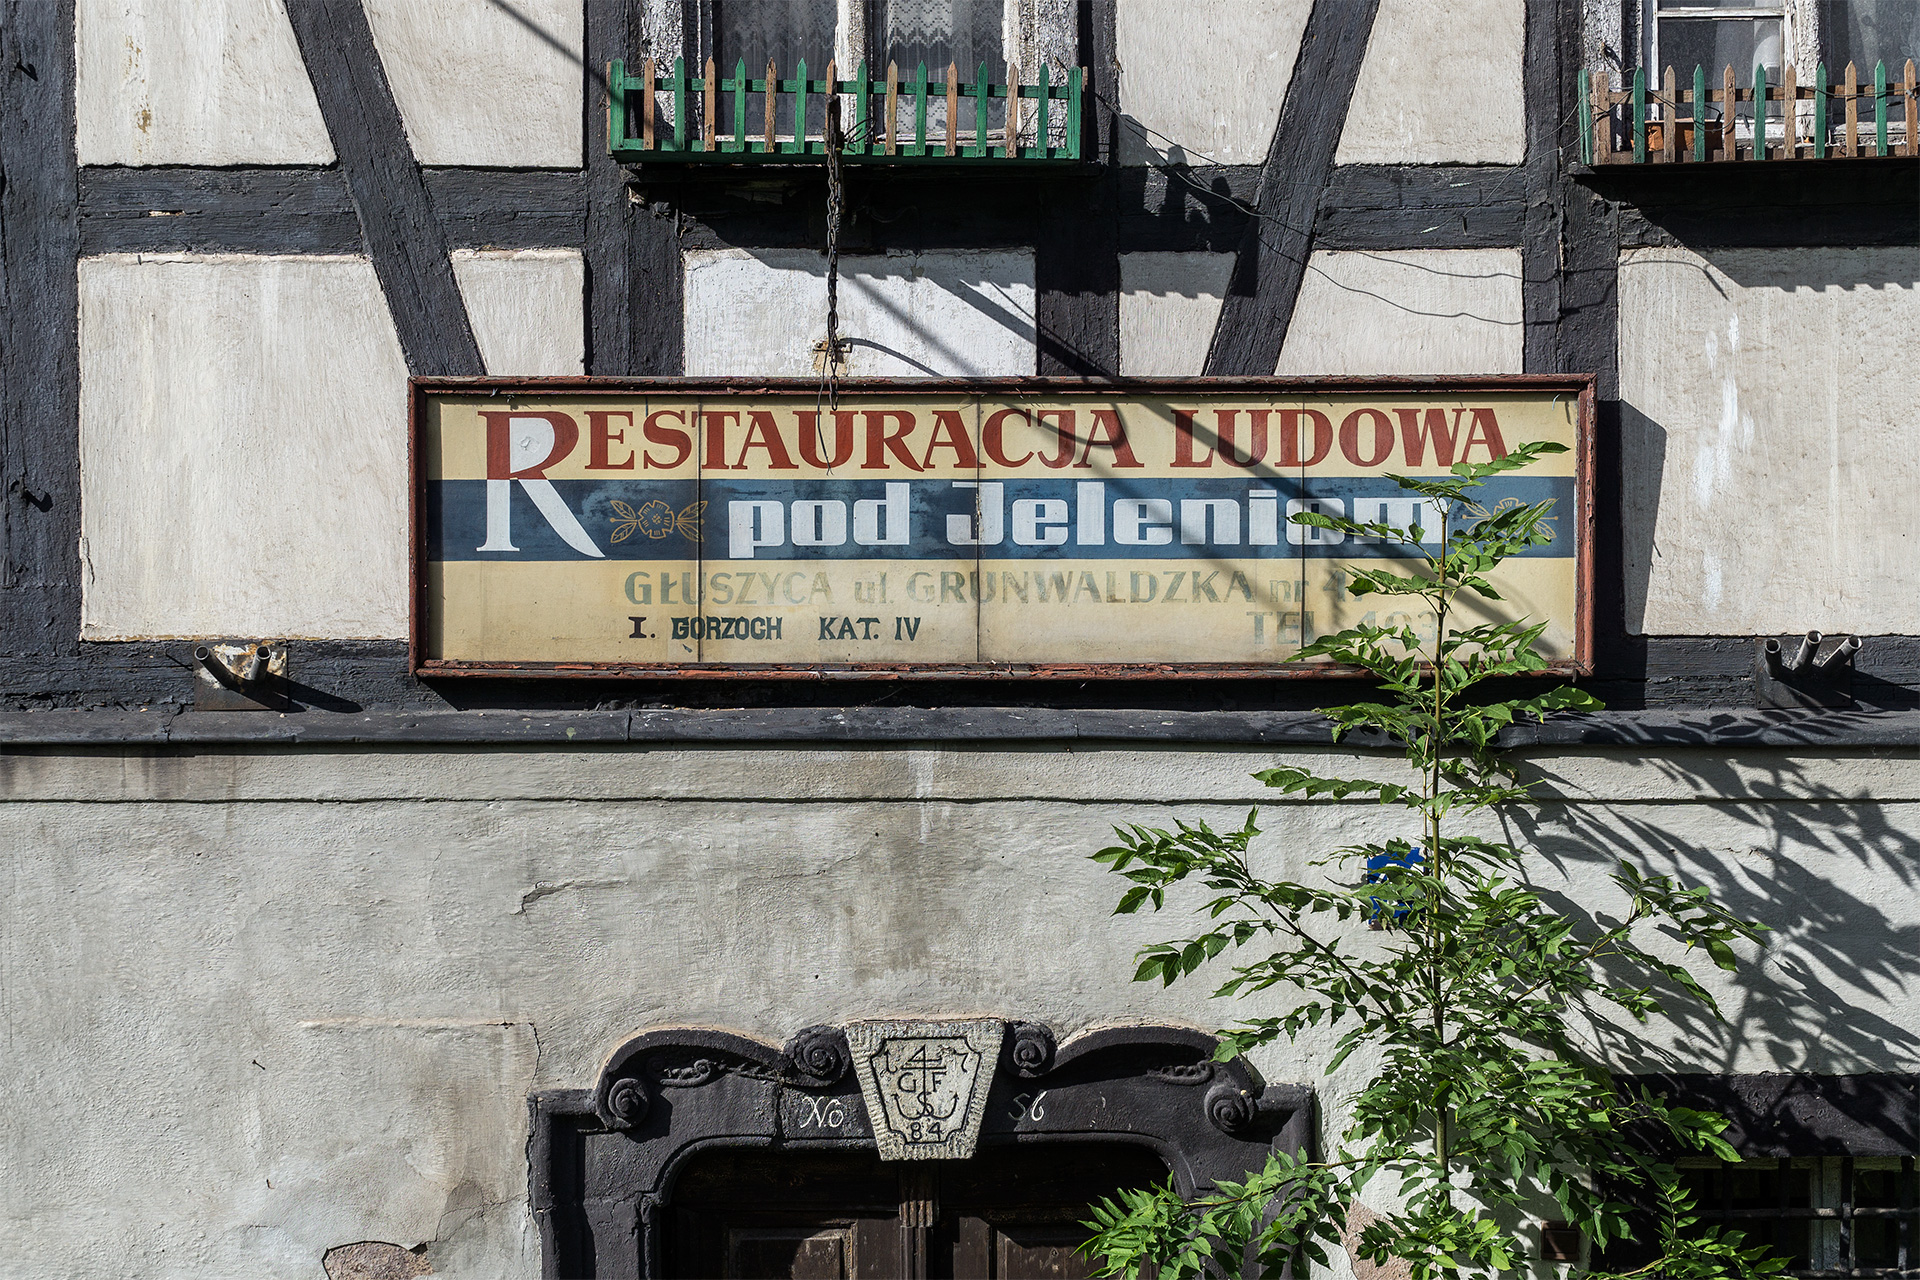 Restauracja ludowa "Pod Jeleniem", Głuszyca, woj. dolnośląskie